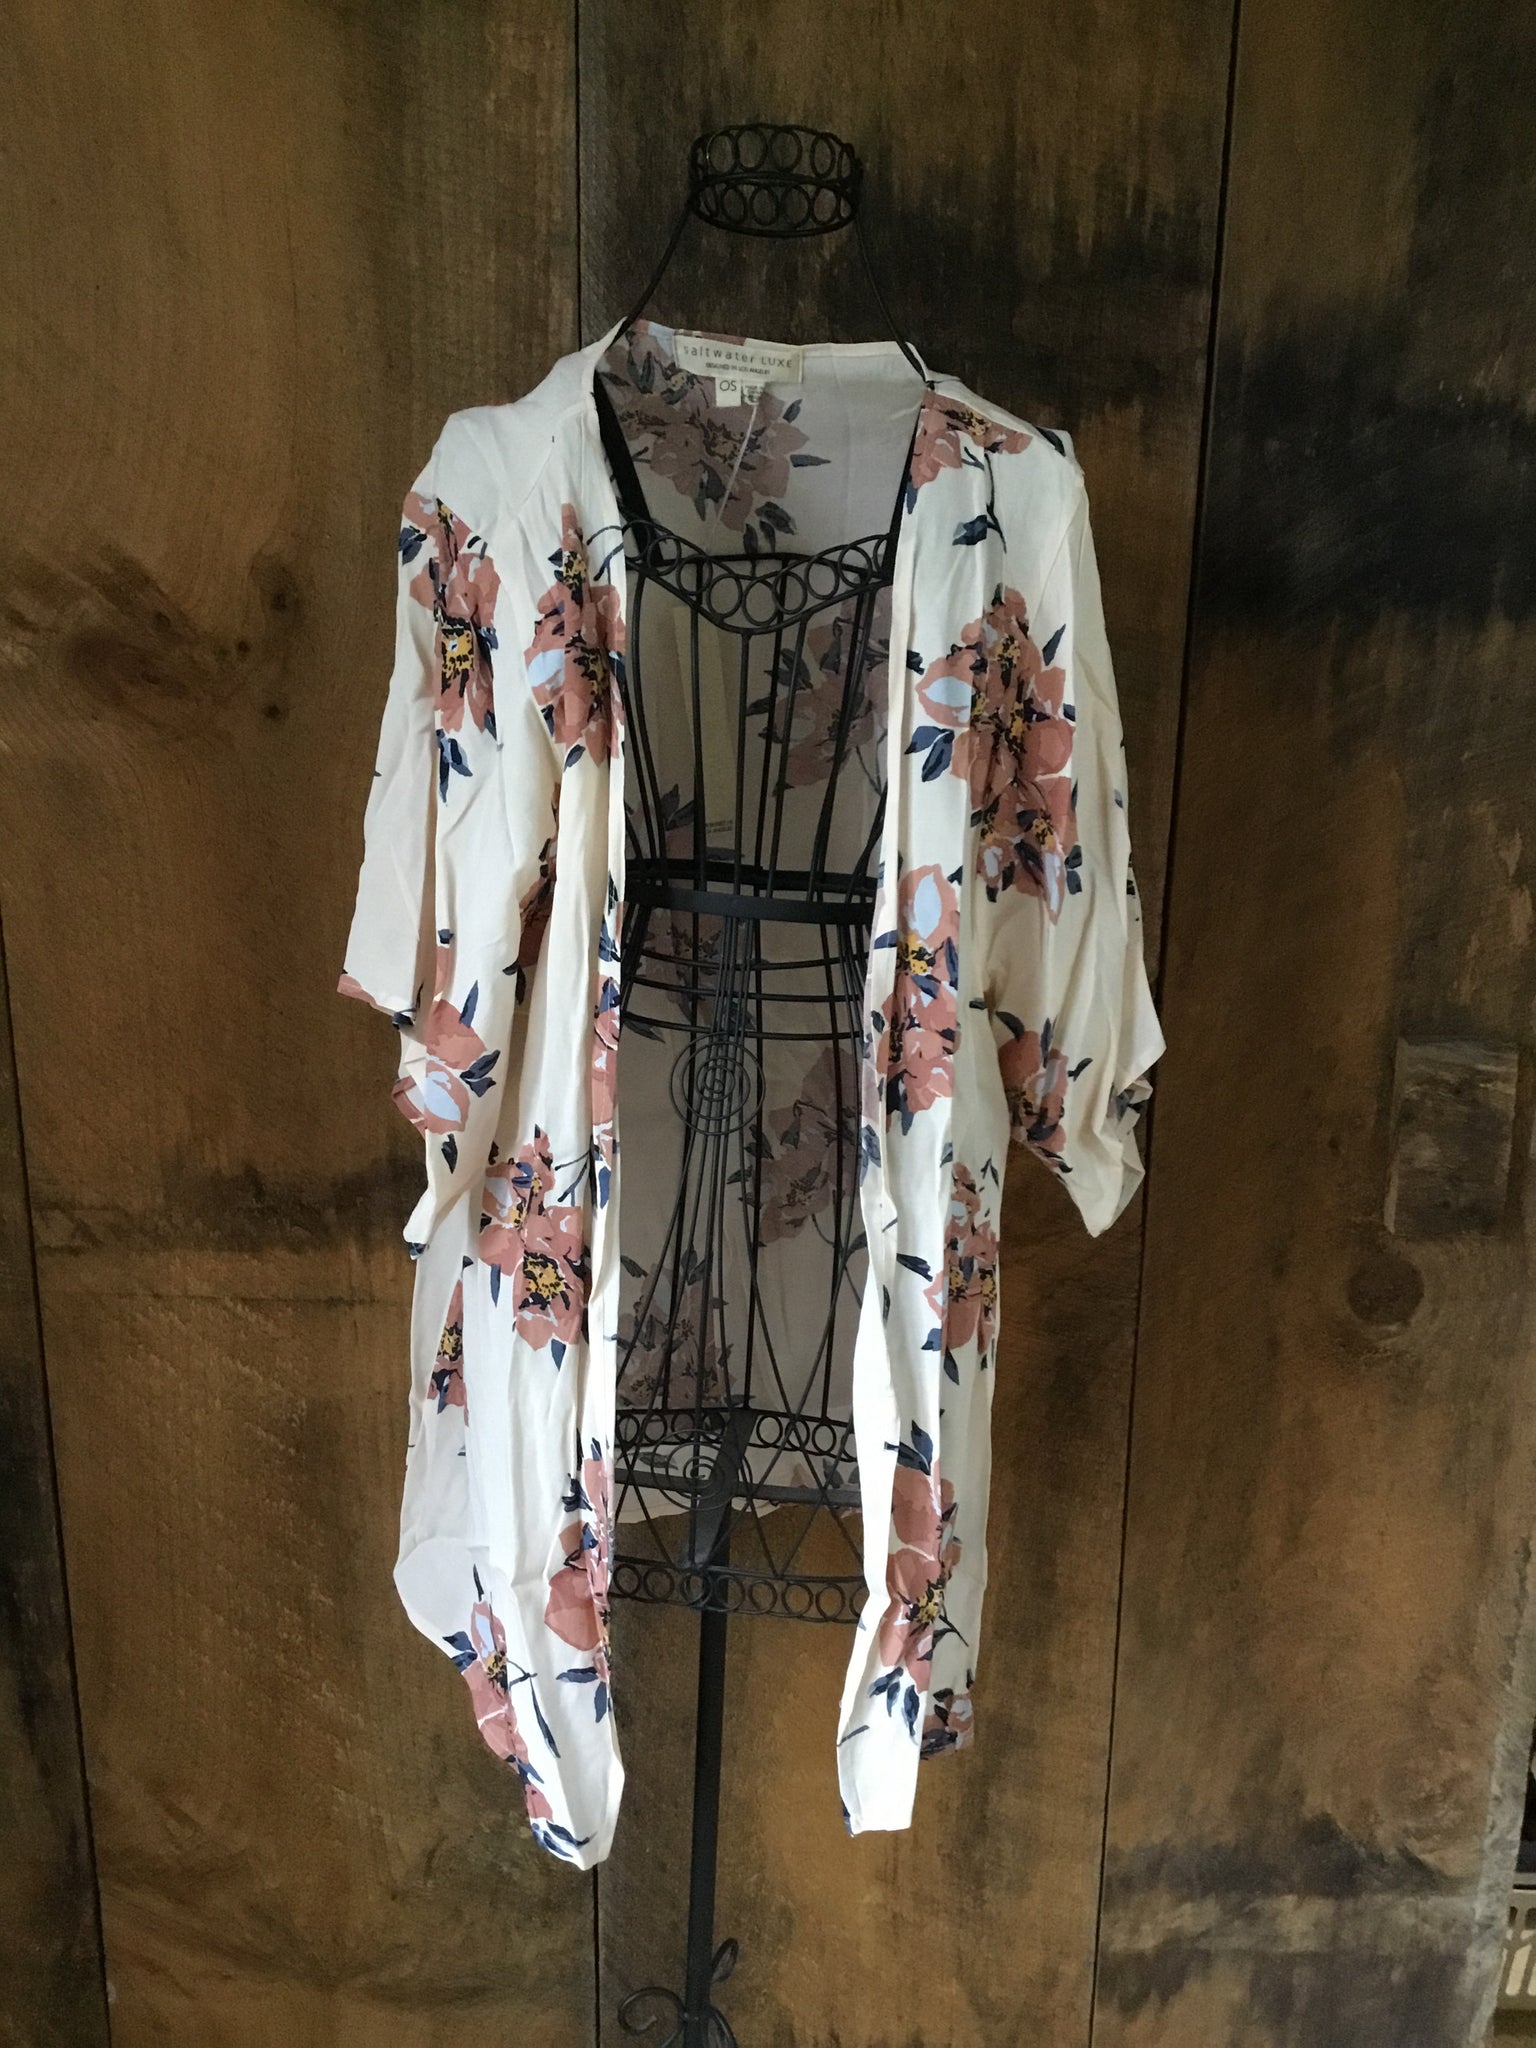 Saltwater Luxe Kimono – BOHO thrift shop